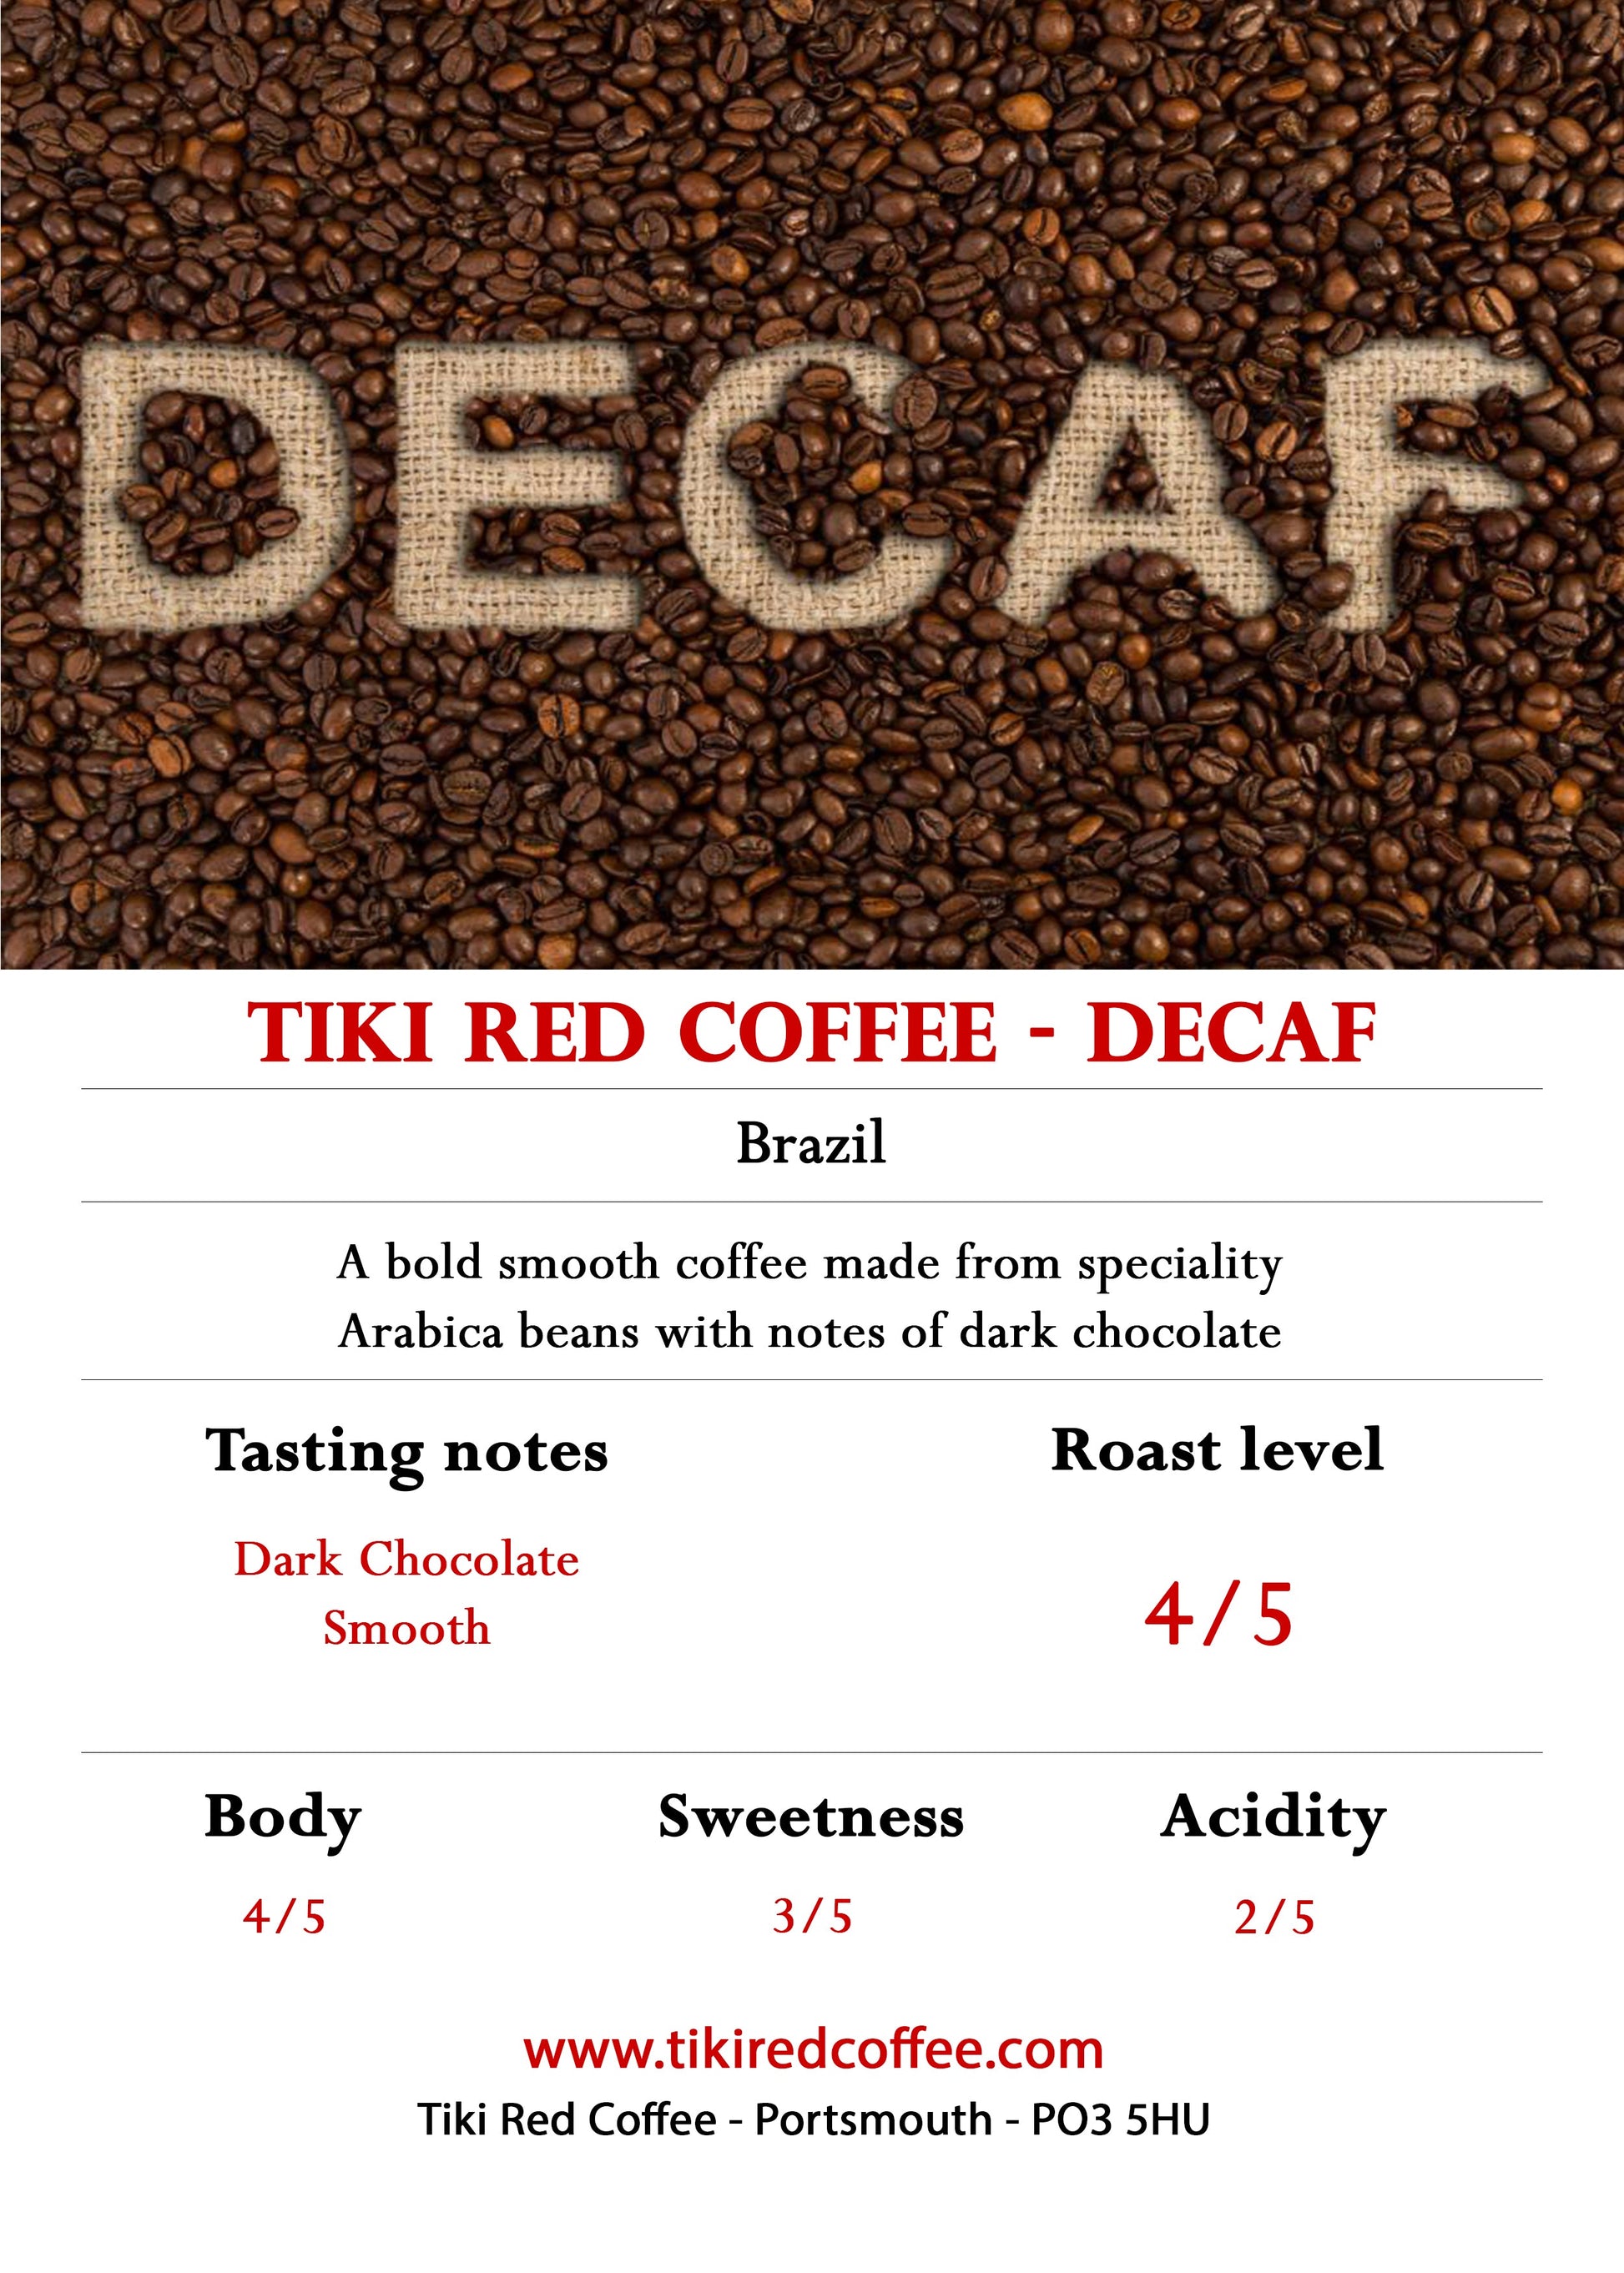 Decaf - Coffee